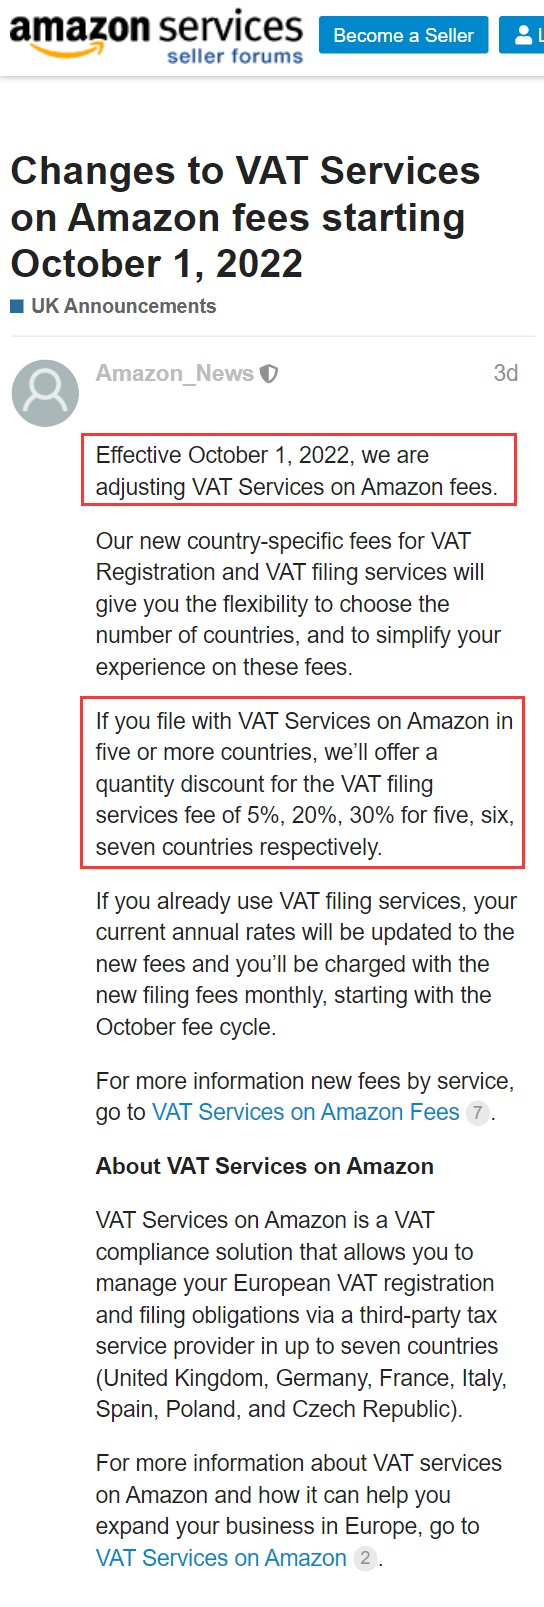 亚马逊欧洲站今年10月1日起将调整增值税服务费用